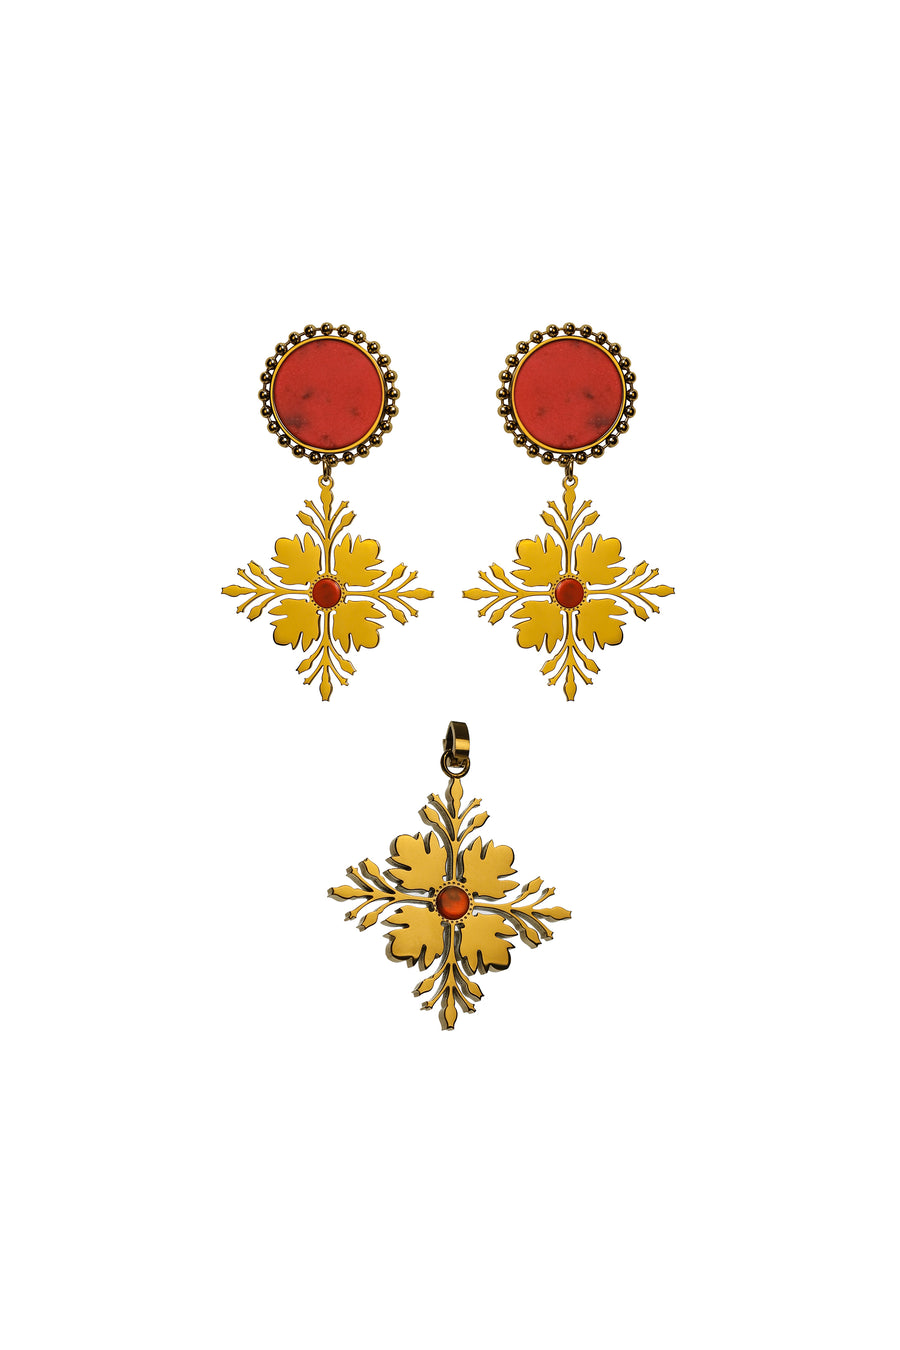 Maltese Tile Pattern Flame Stone Pendant & Earring Gift Set